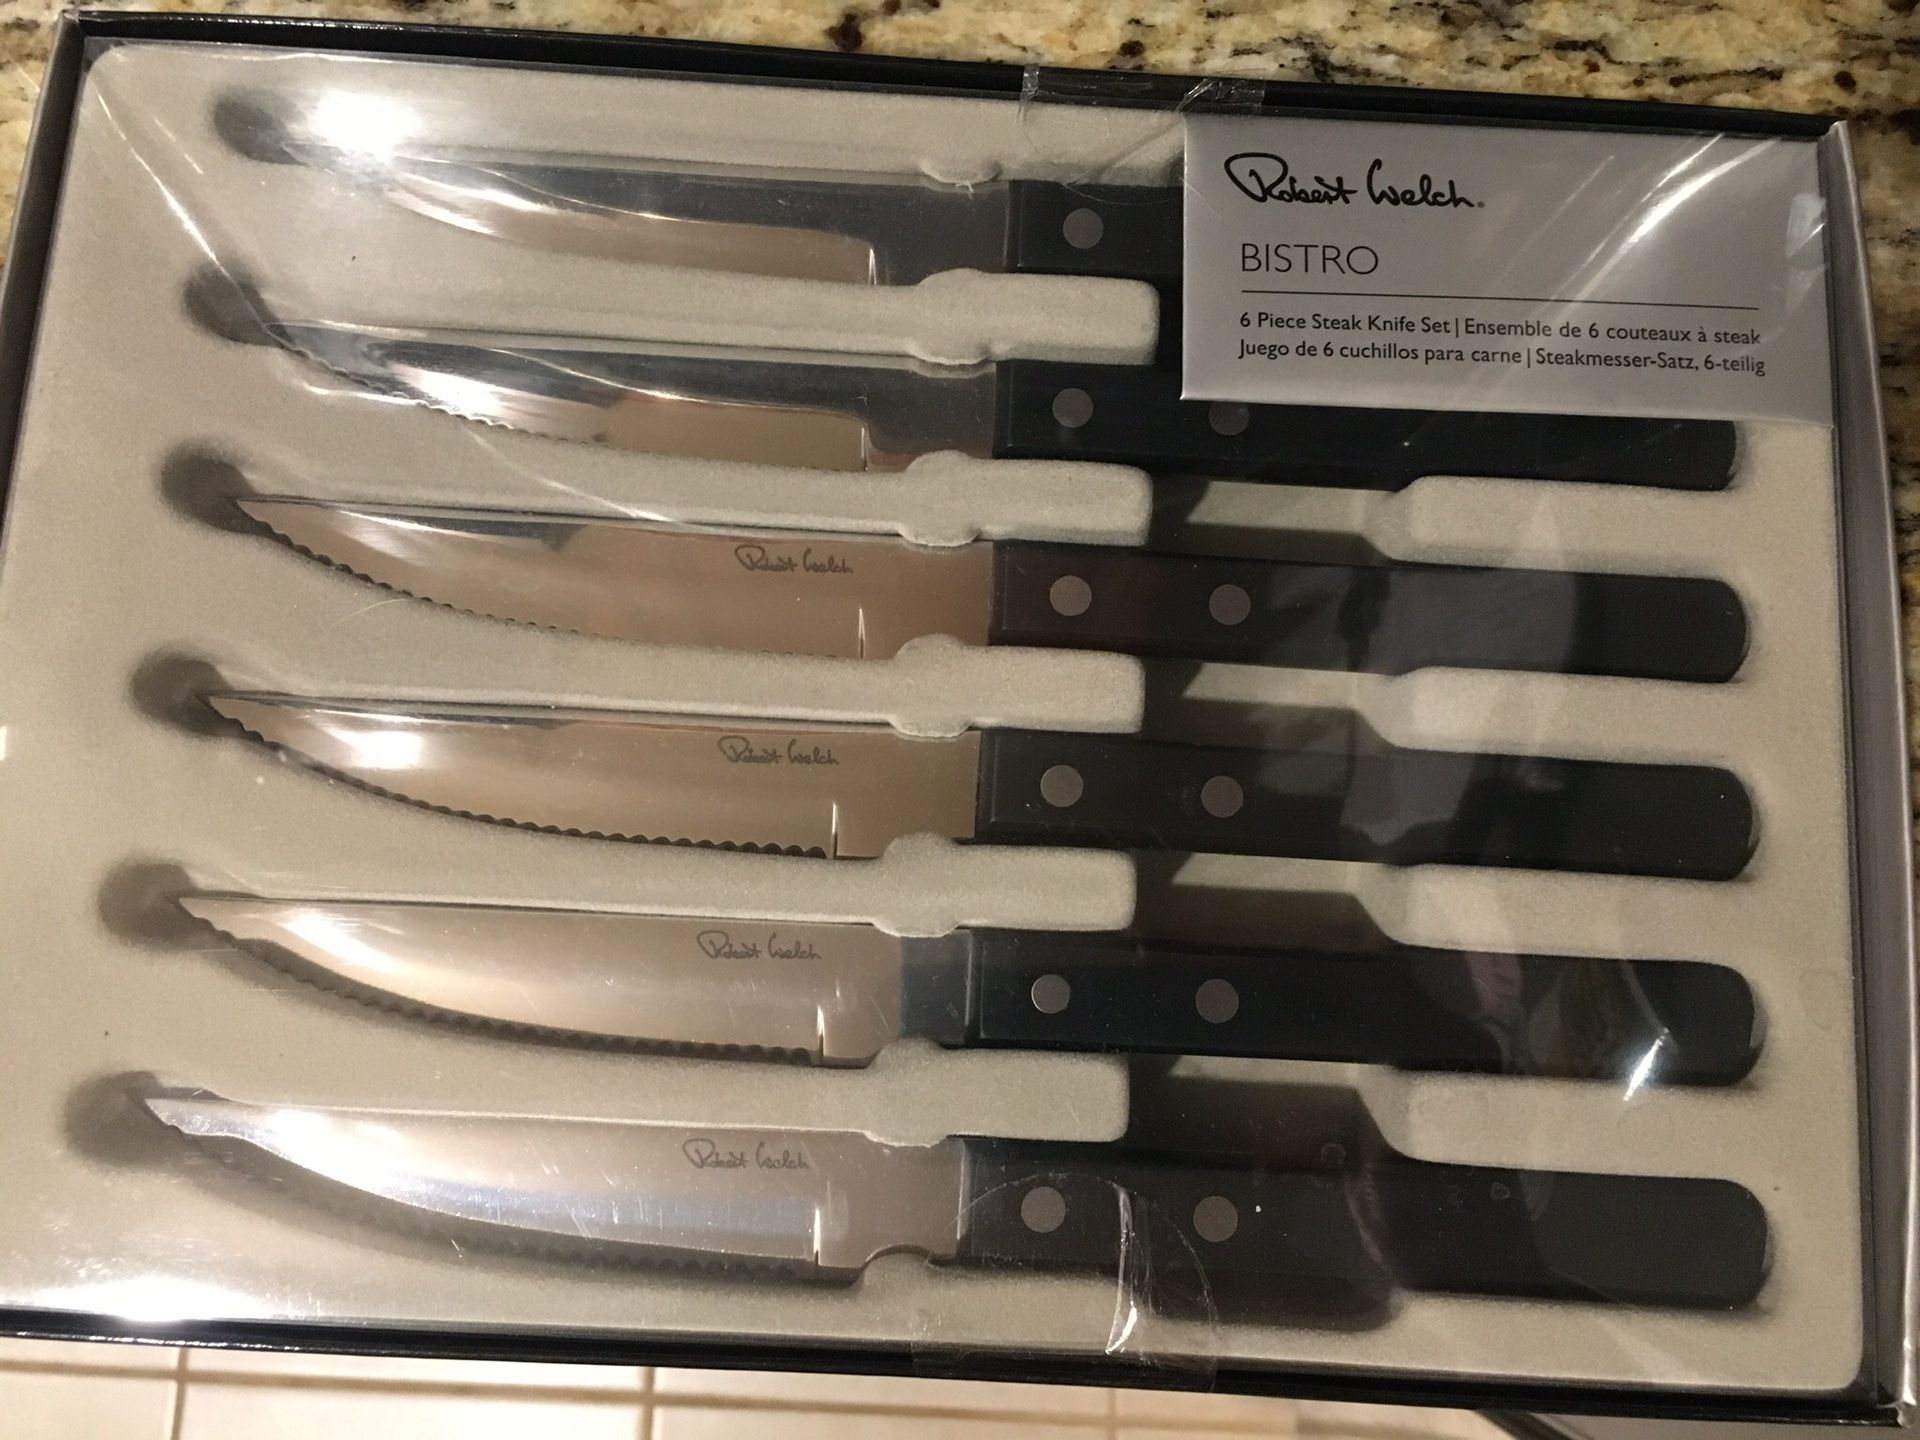 NEW Robert Welch Knife Set